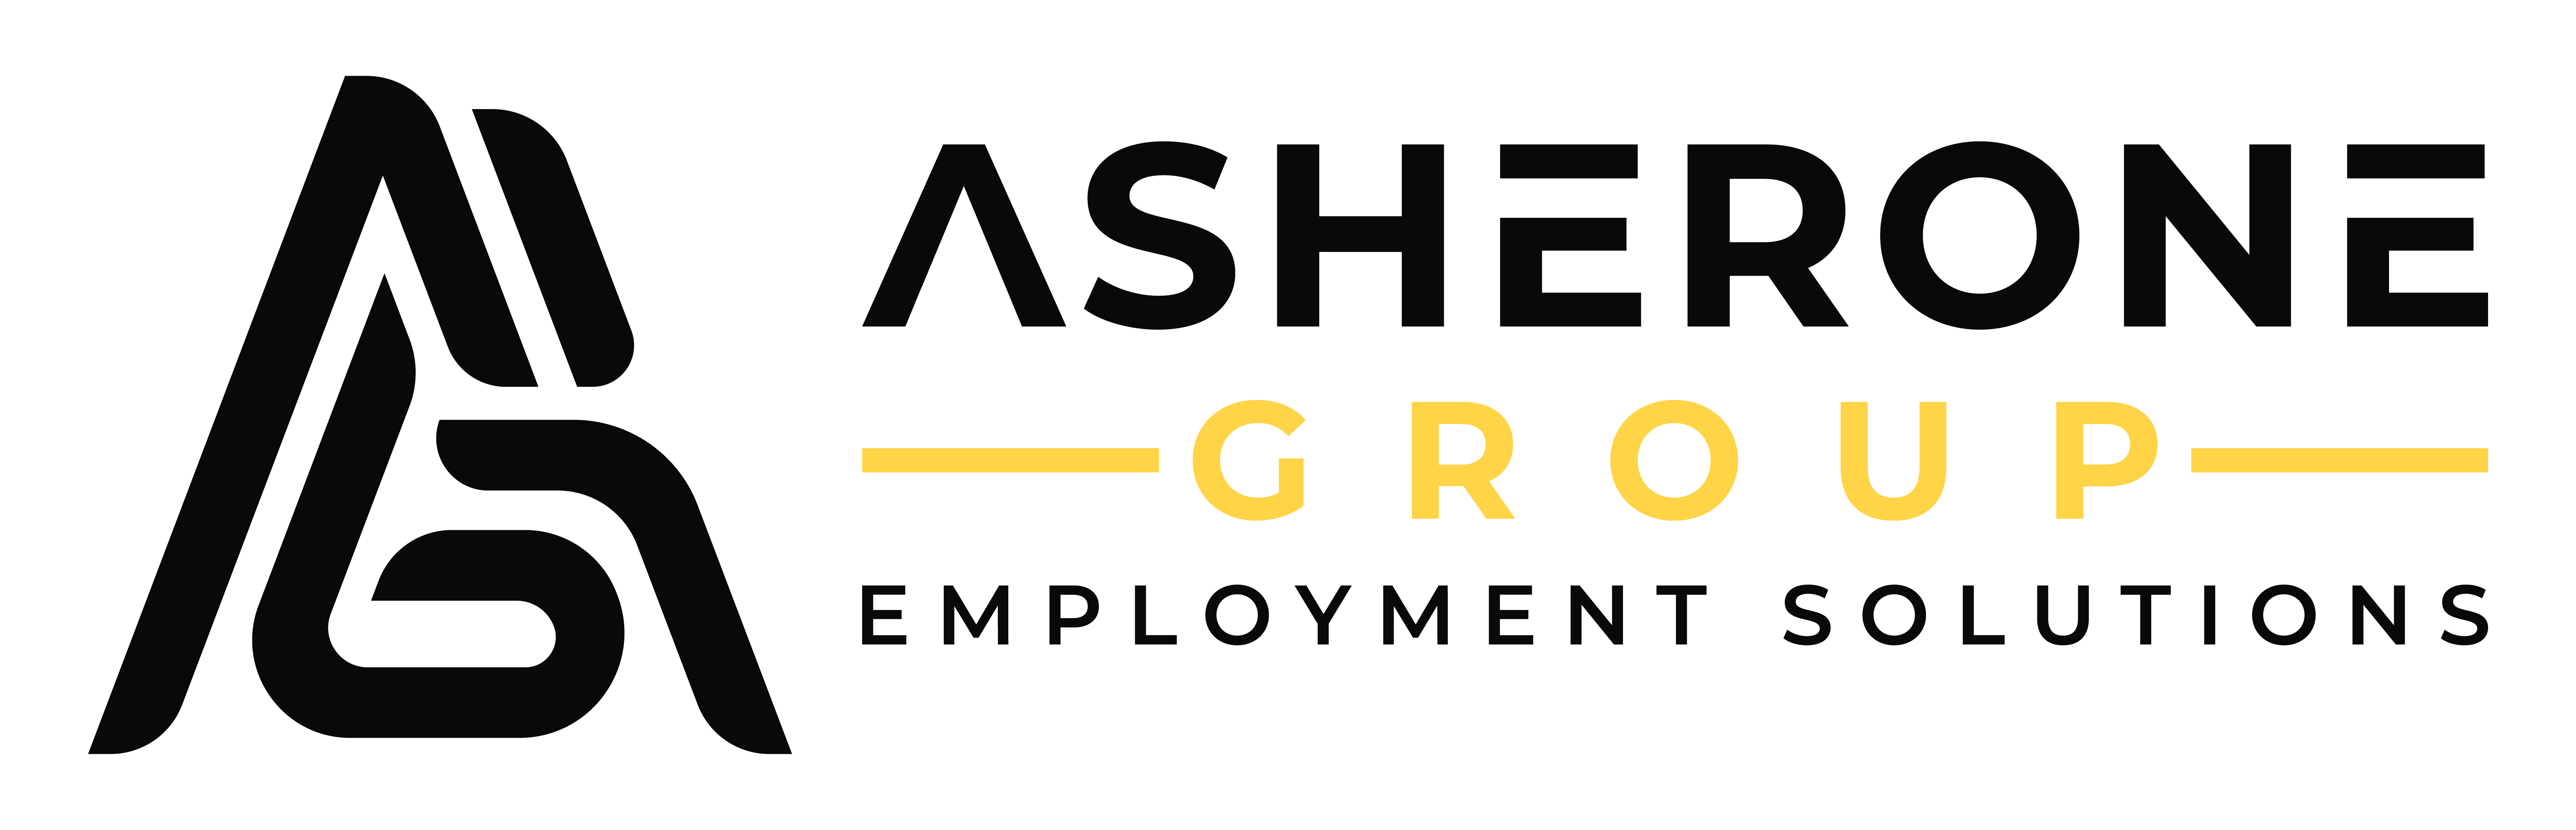 Asherone Group